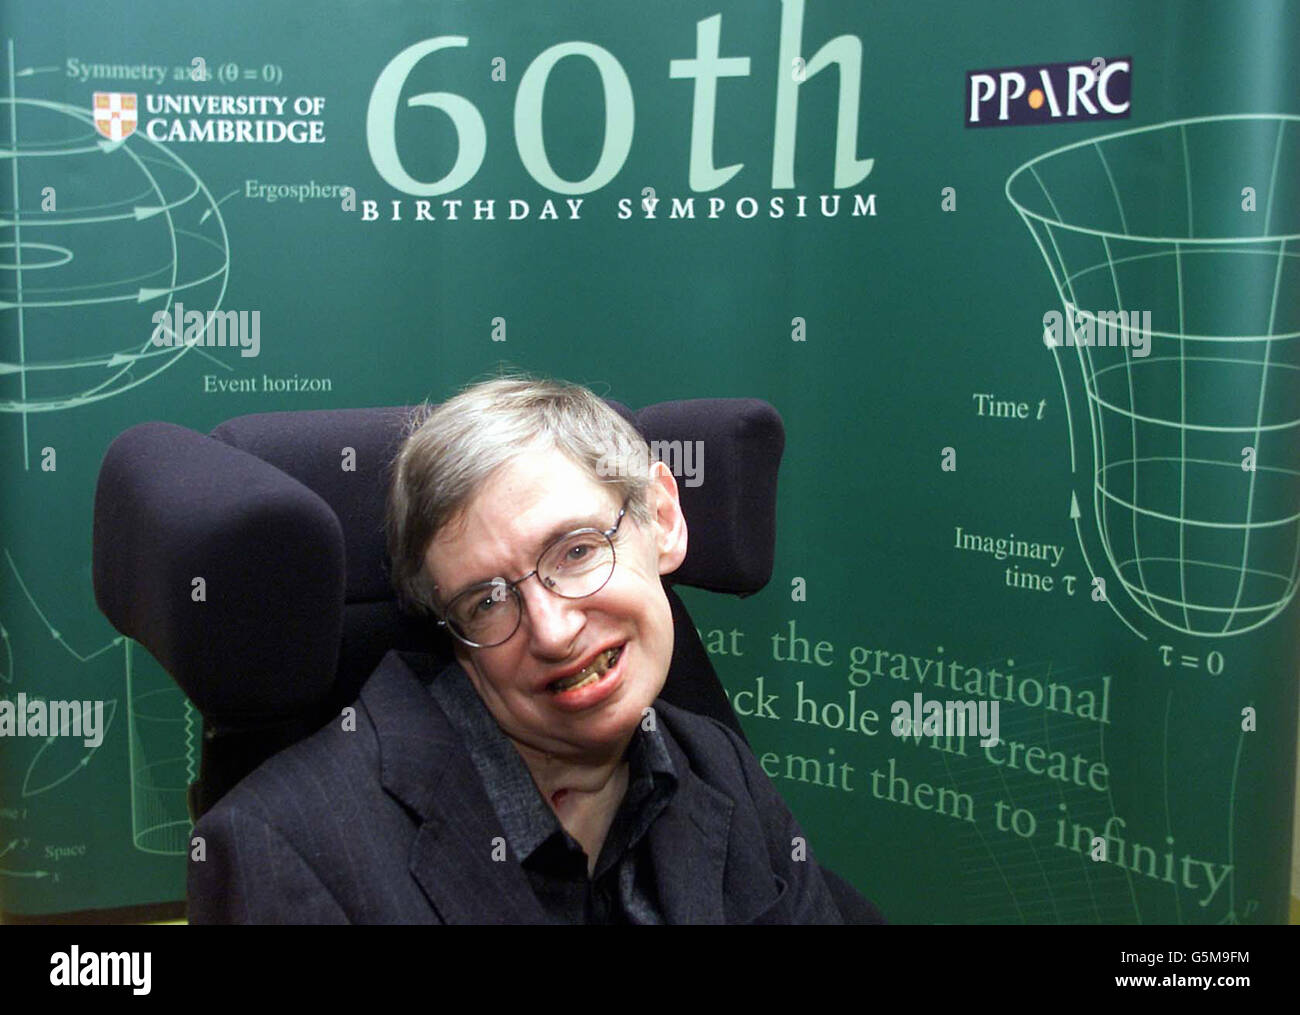 Professor Stephen Hawking besucht am 8. Januar 2002 eine Fotozelle am Center for Mathematical Sciences der Universität Cambridge, um seinen 60. Geburtstag zu feiern. Hawking wird auf seinem 60. Geburtstagssymposium eine Rede halten, um seine Beiträge zur fundamentalen Physik und Kosmologie zu feiern. Der Professor leidet an einer Form der amyotorischen Lateralsklerose. Stockfoto